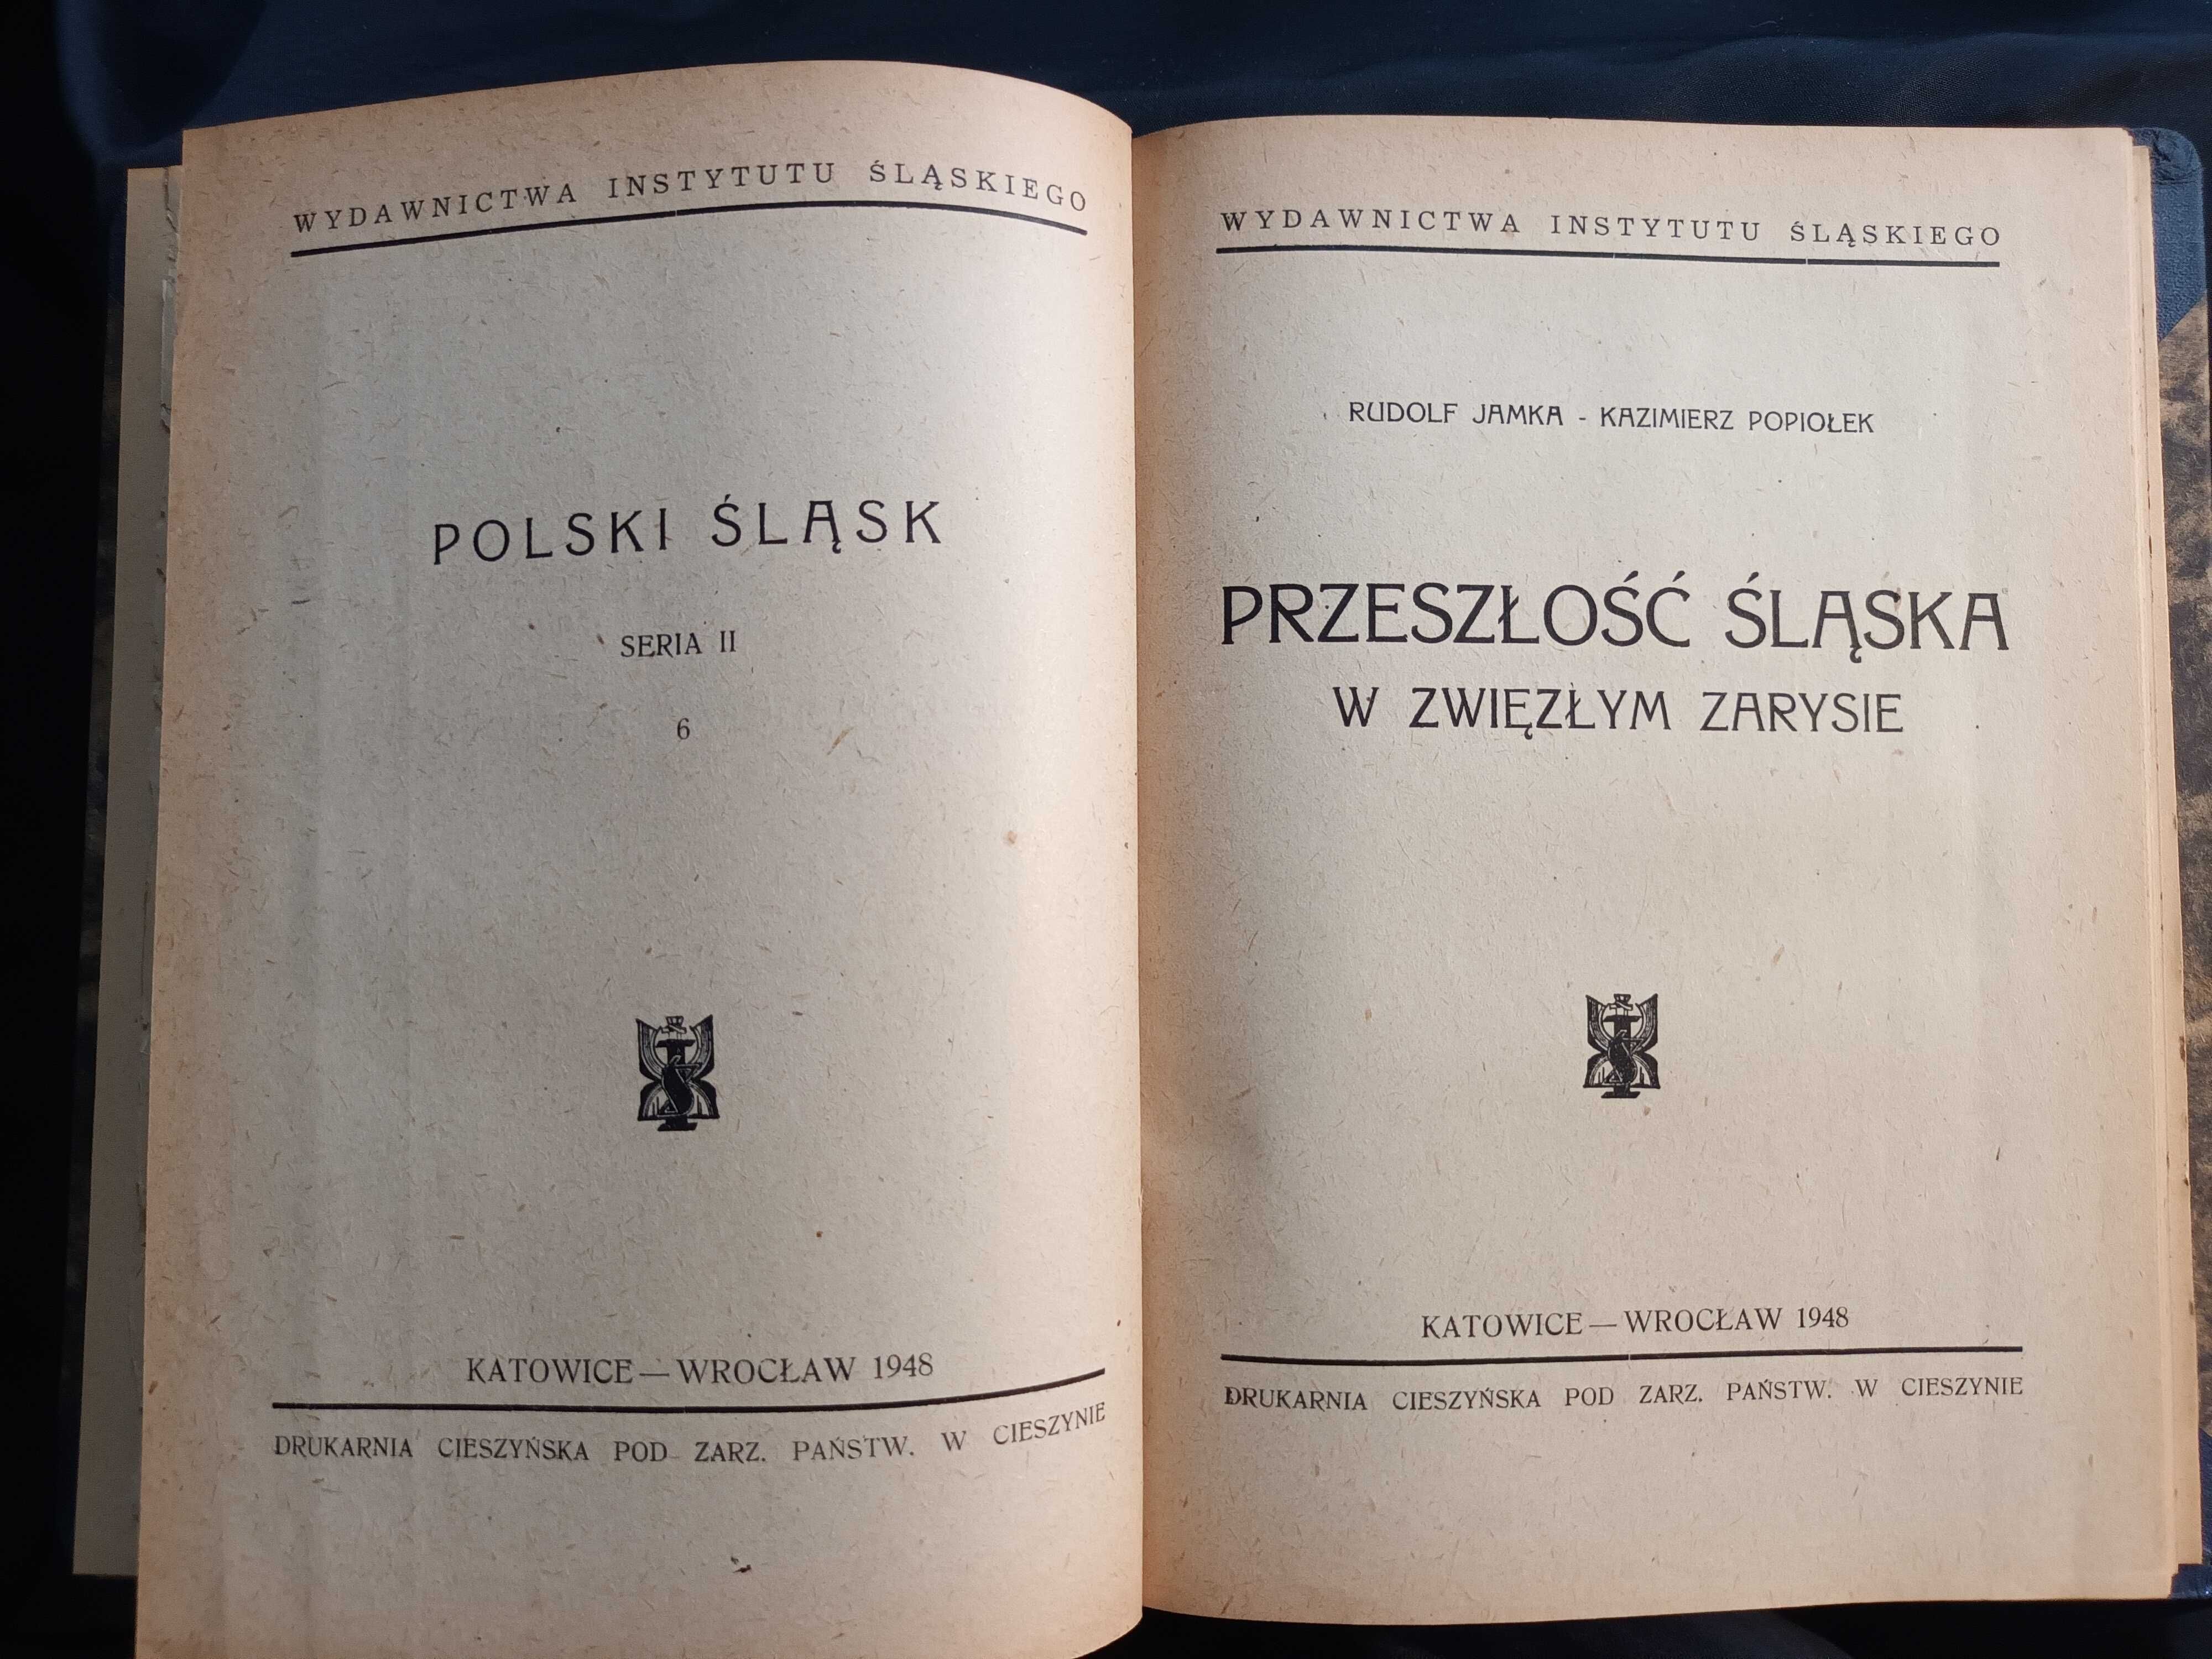 Wczesne propagandowe publikacje PRL o Ziemiach Odzyskanych